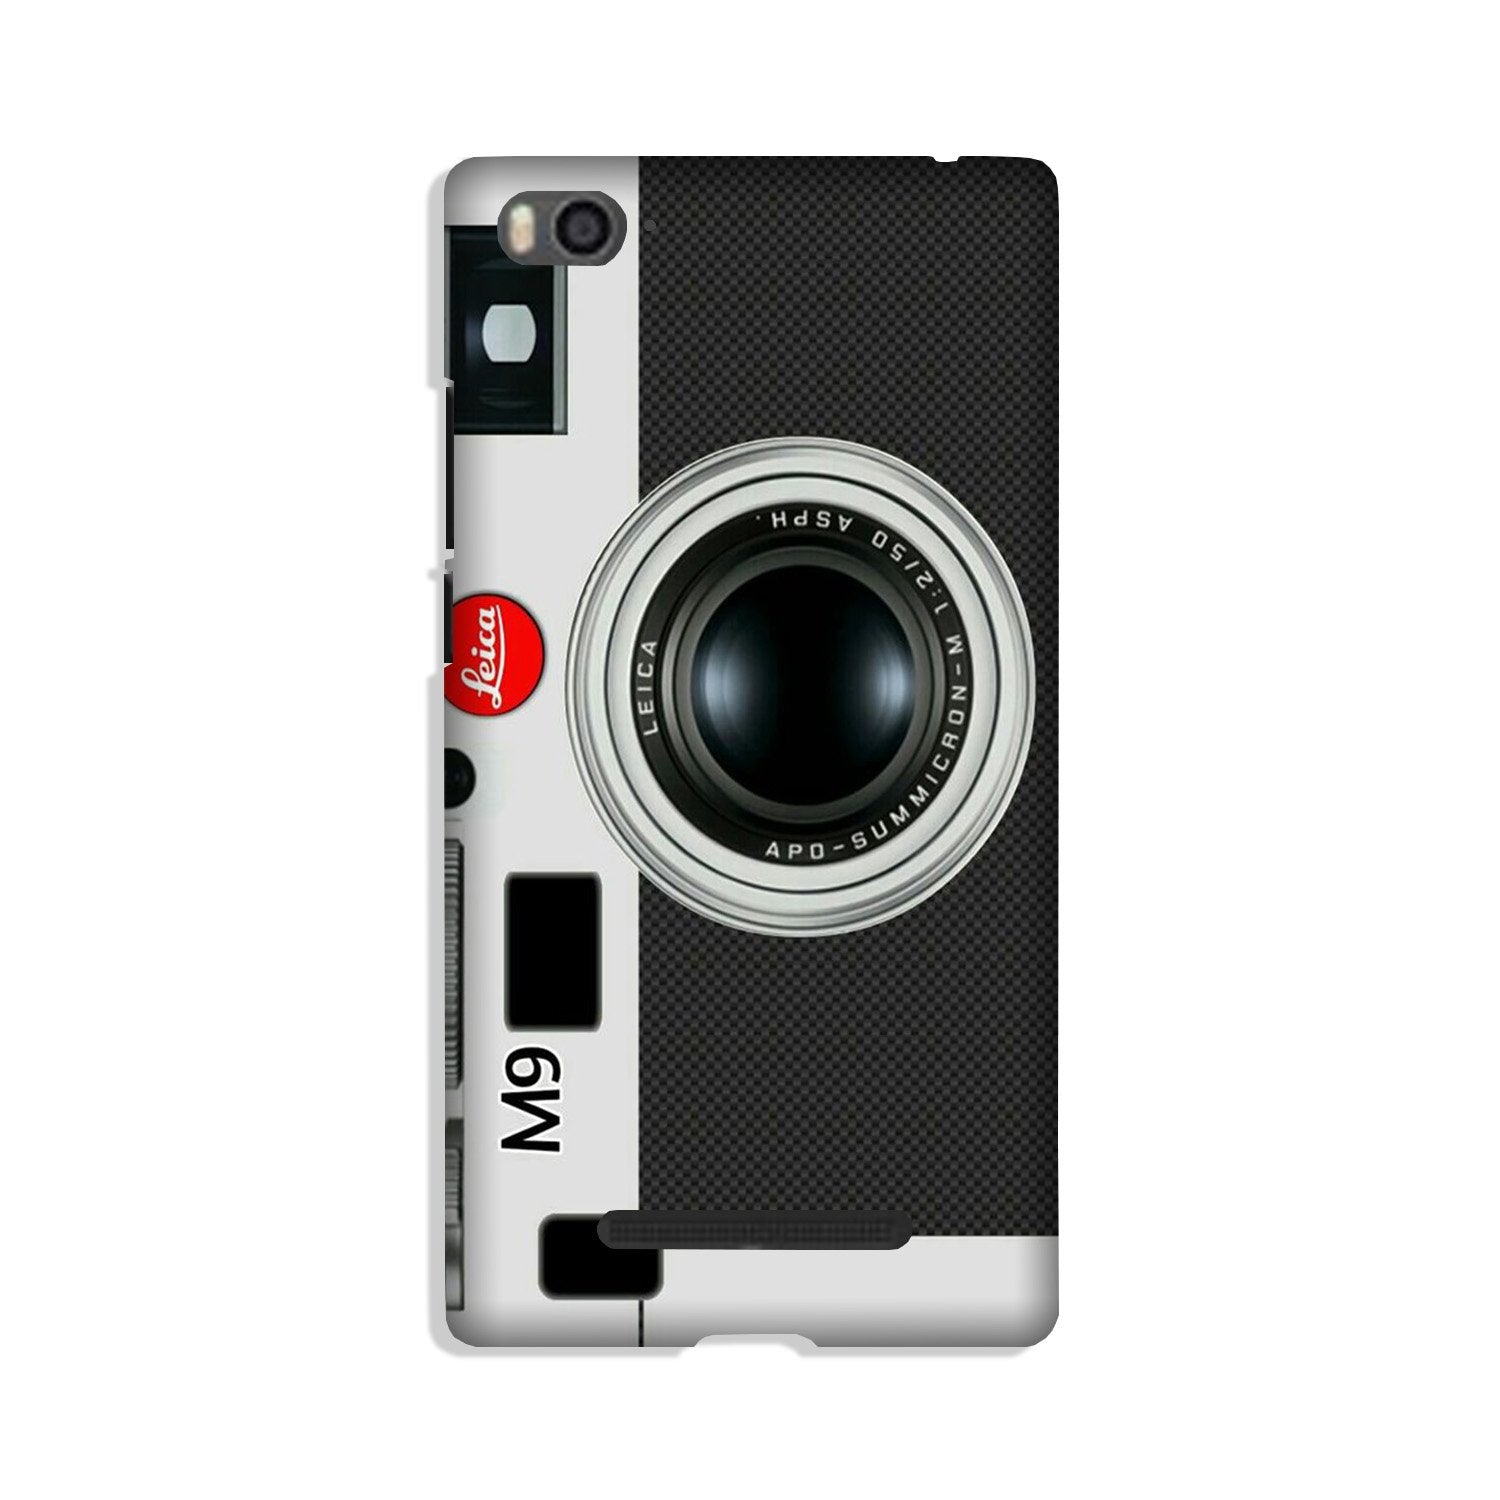 Camera Case for Xiaomi Redmi 5A (Design No. 257)